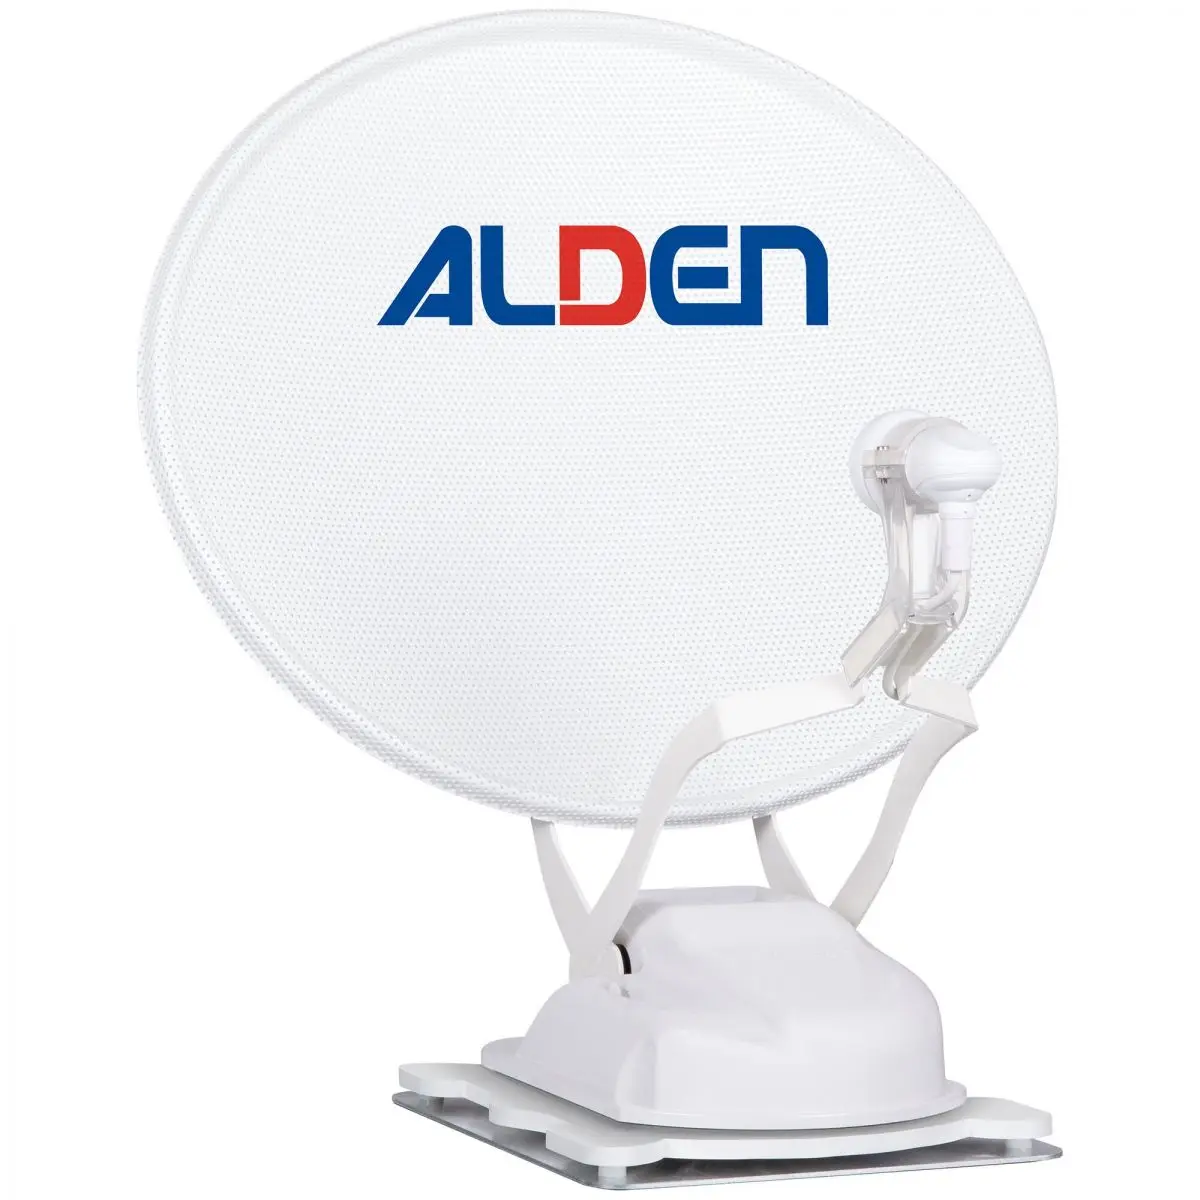 Sistem de satelit Alden Onelight 65 HD, care include modul de control SSC HD și TV Smartwide 22